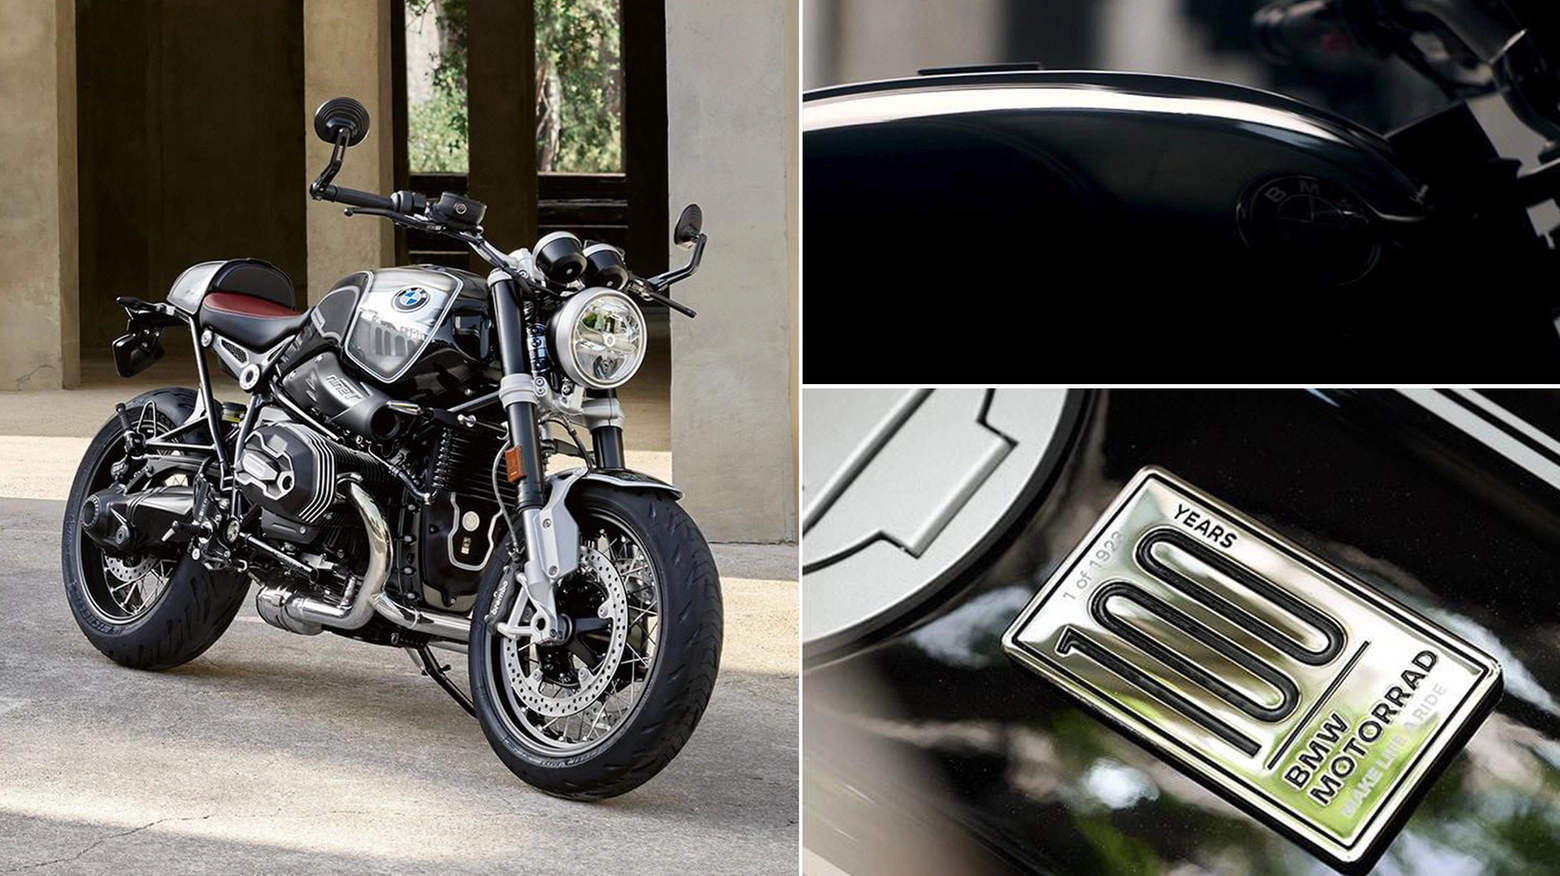 L’edizione speciale mette in risalto le caratteristiche storiche delle prime moto BMW